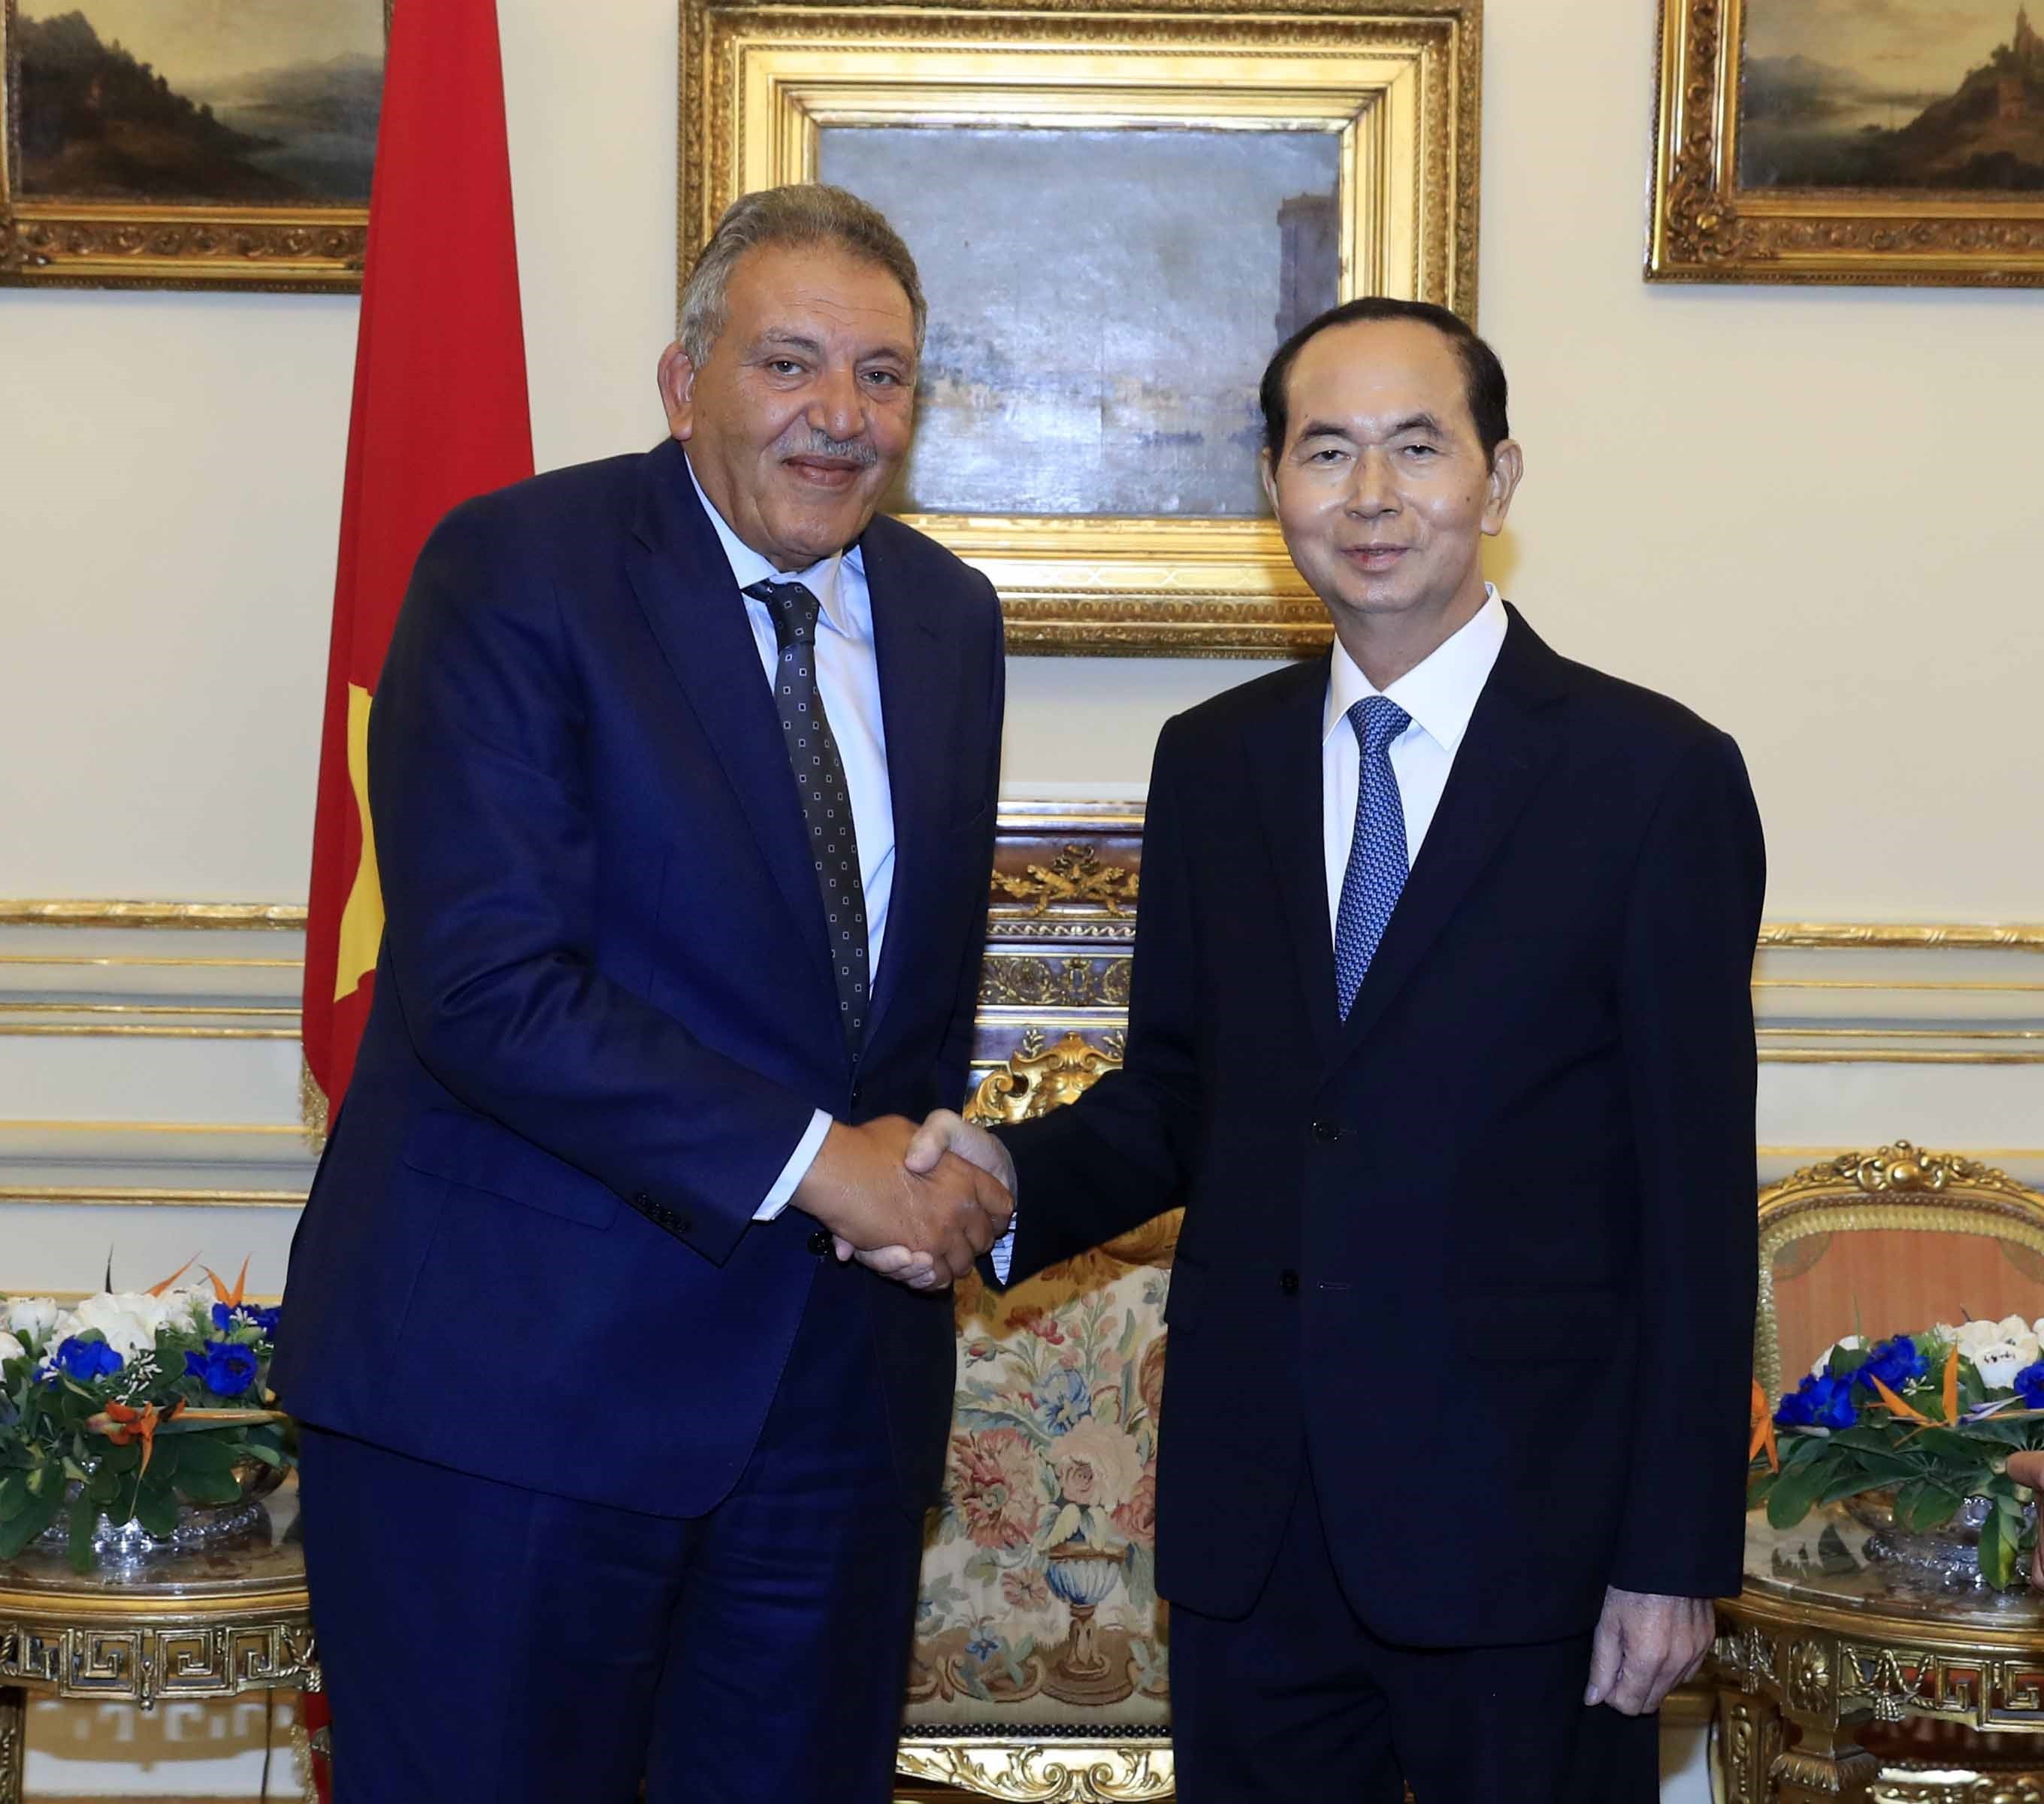 Le président Tran Dai Quang a également rencontré le président de la Fédération des Chambres de commerce égyptiennes (FEDCOC), Ahmed Al Wakil. Photo: VNA